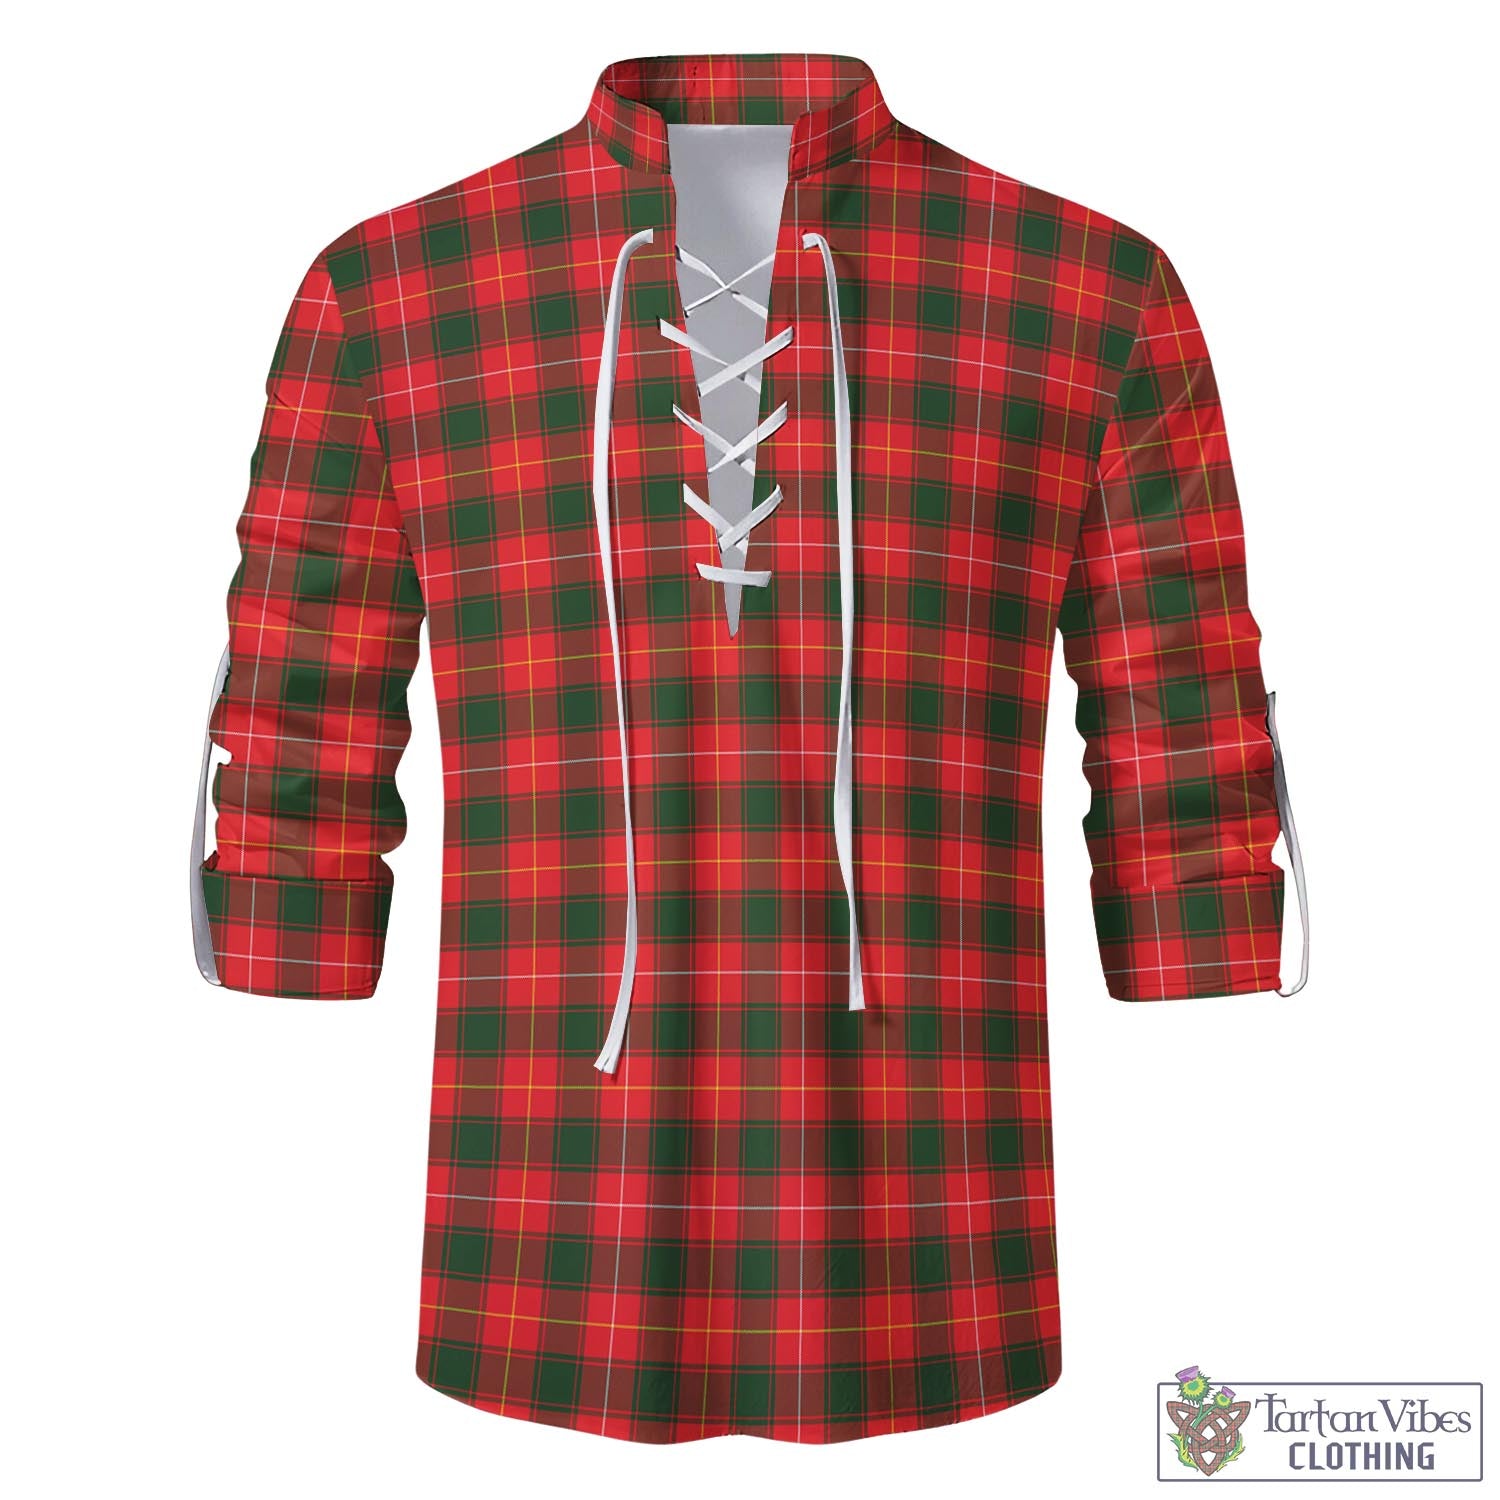 Tartan Vibes Clothing MacFie Modern Tartan Men's Scottish Traditional Jacobite Ghillie Kilt Shirt